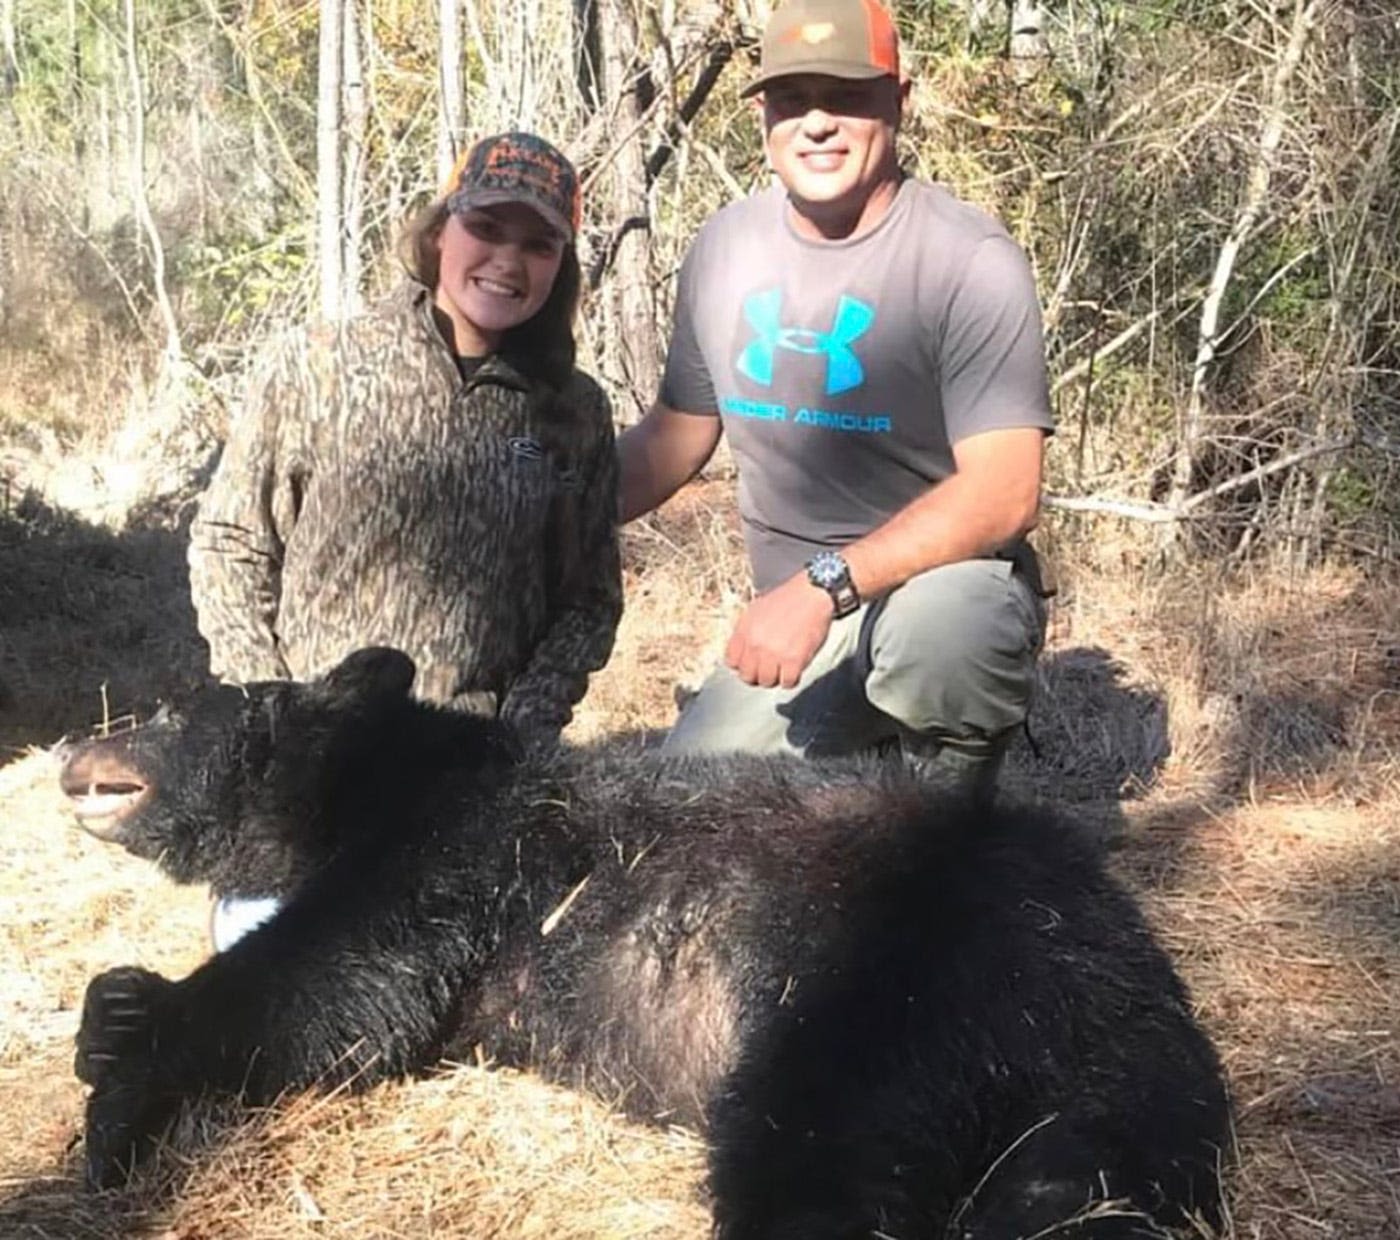 How Oklahoma State's Karli Godwin became 'country strong' playing softball, hunting bears